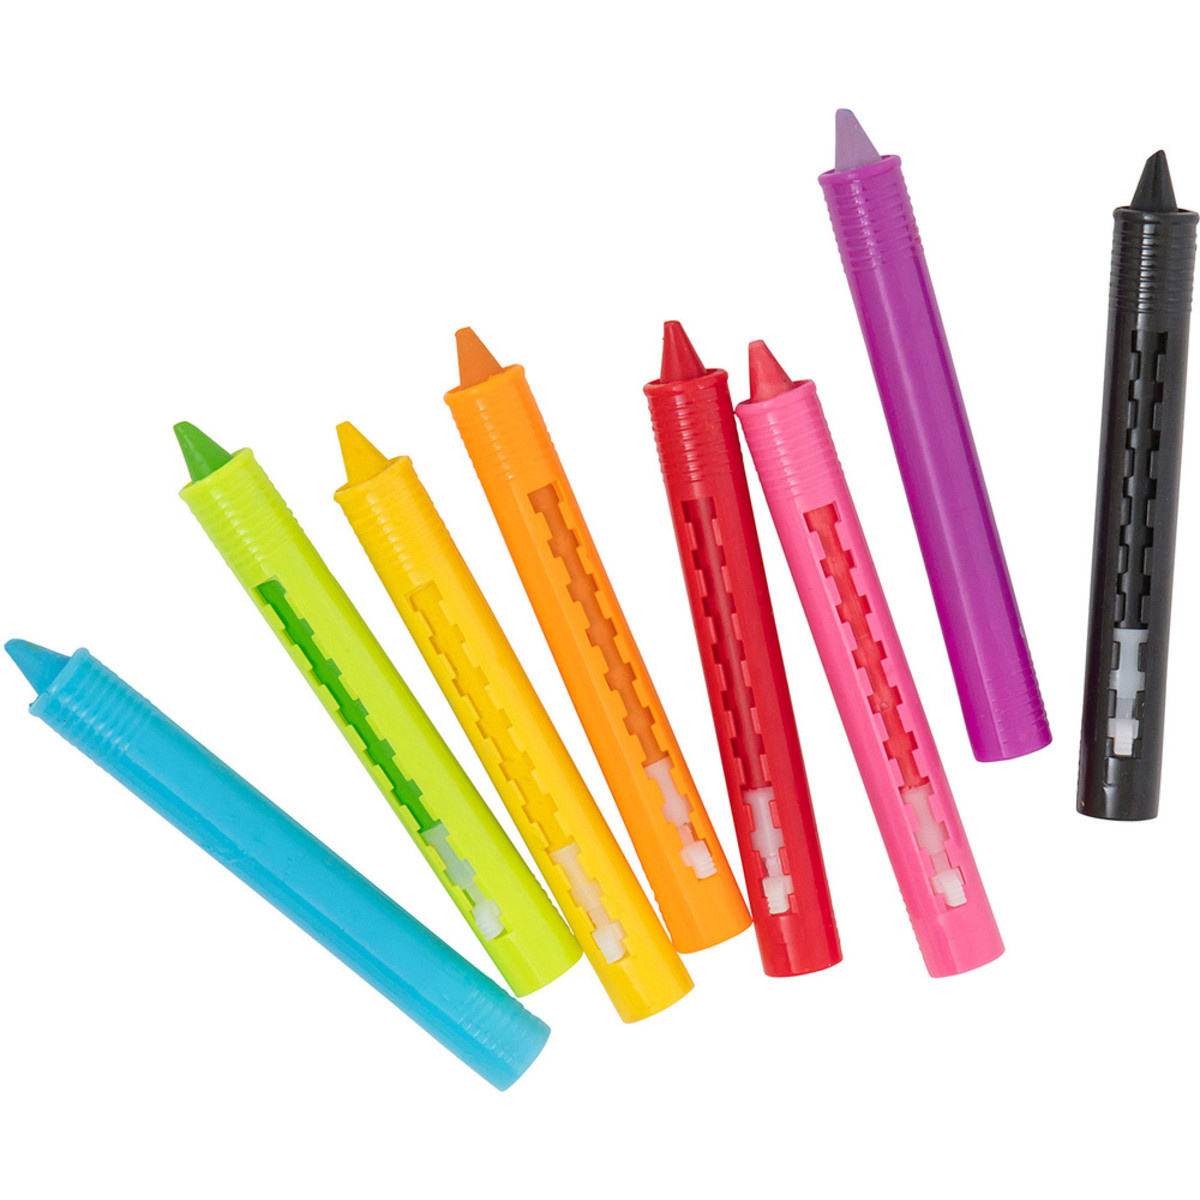  Billikins™ 12 Bath Crayons For Toddlers┃12 Color Crayons For  Kids┃ Bath Tub Crayons┃Bath Crayons Non Toxic┃Bath Toys┃Crayones De Baño┃  Safe & Easy To Clean : Toys & Games